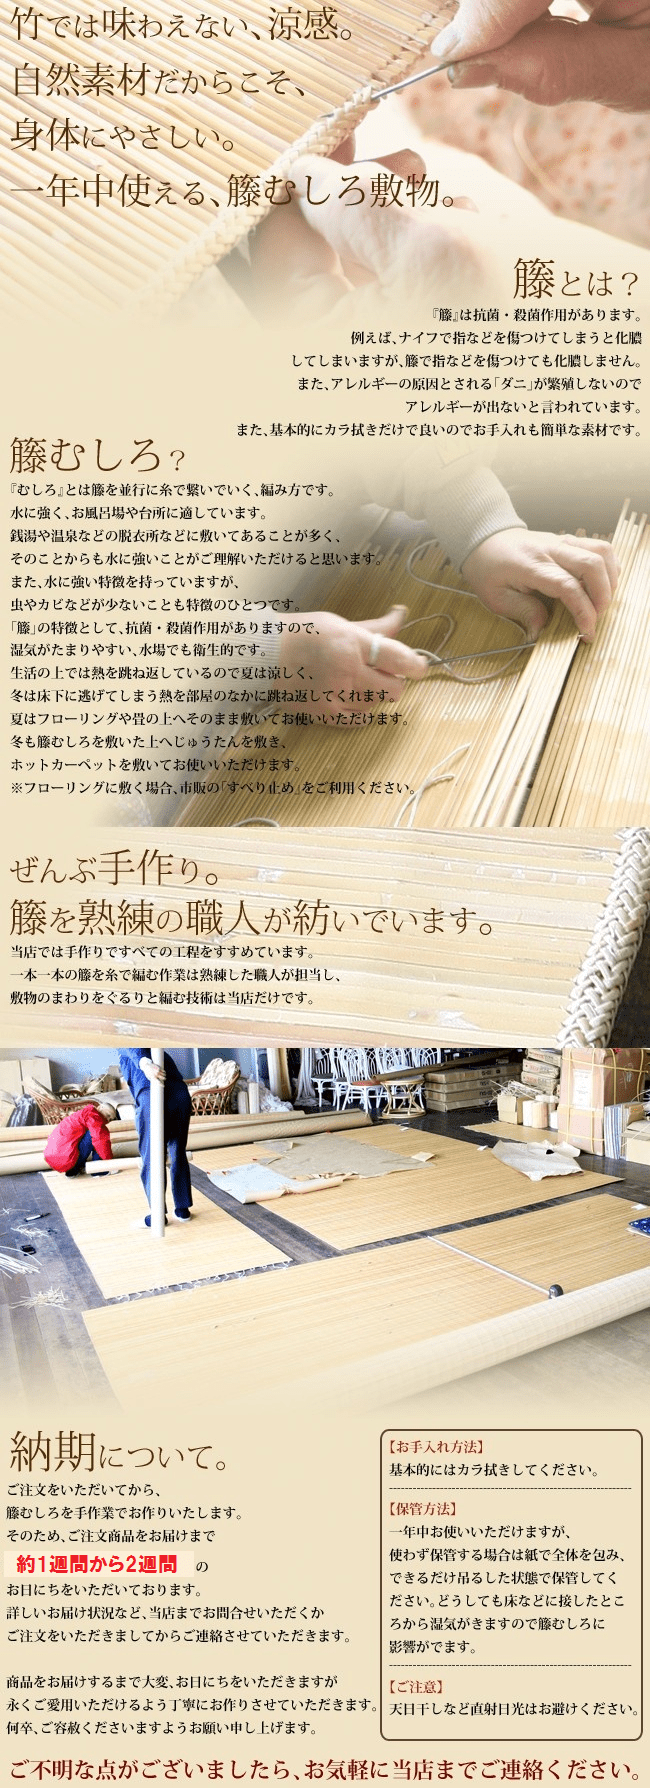 籐とは、籐むしろとは。福島工業株式会社では熟練した職人が担当し全ての工程を手作りで紡いでいます。